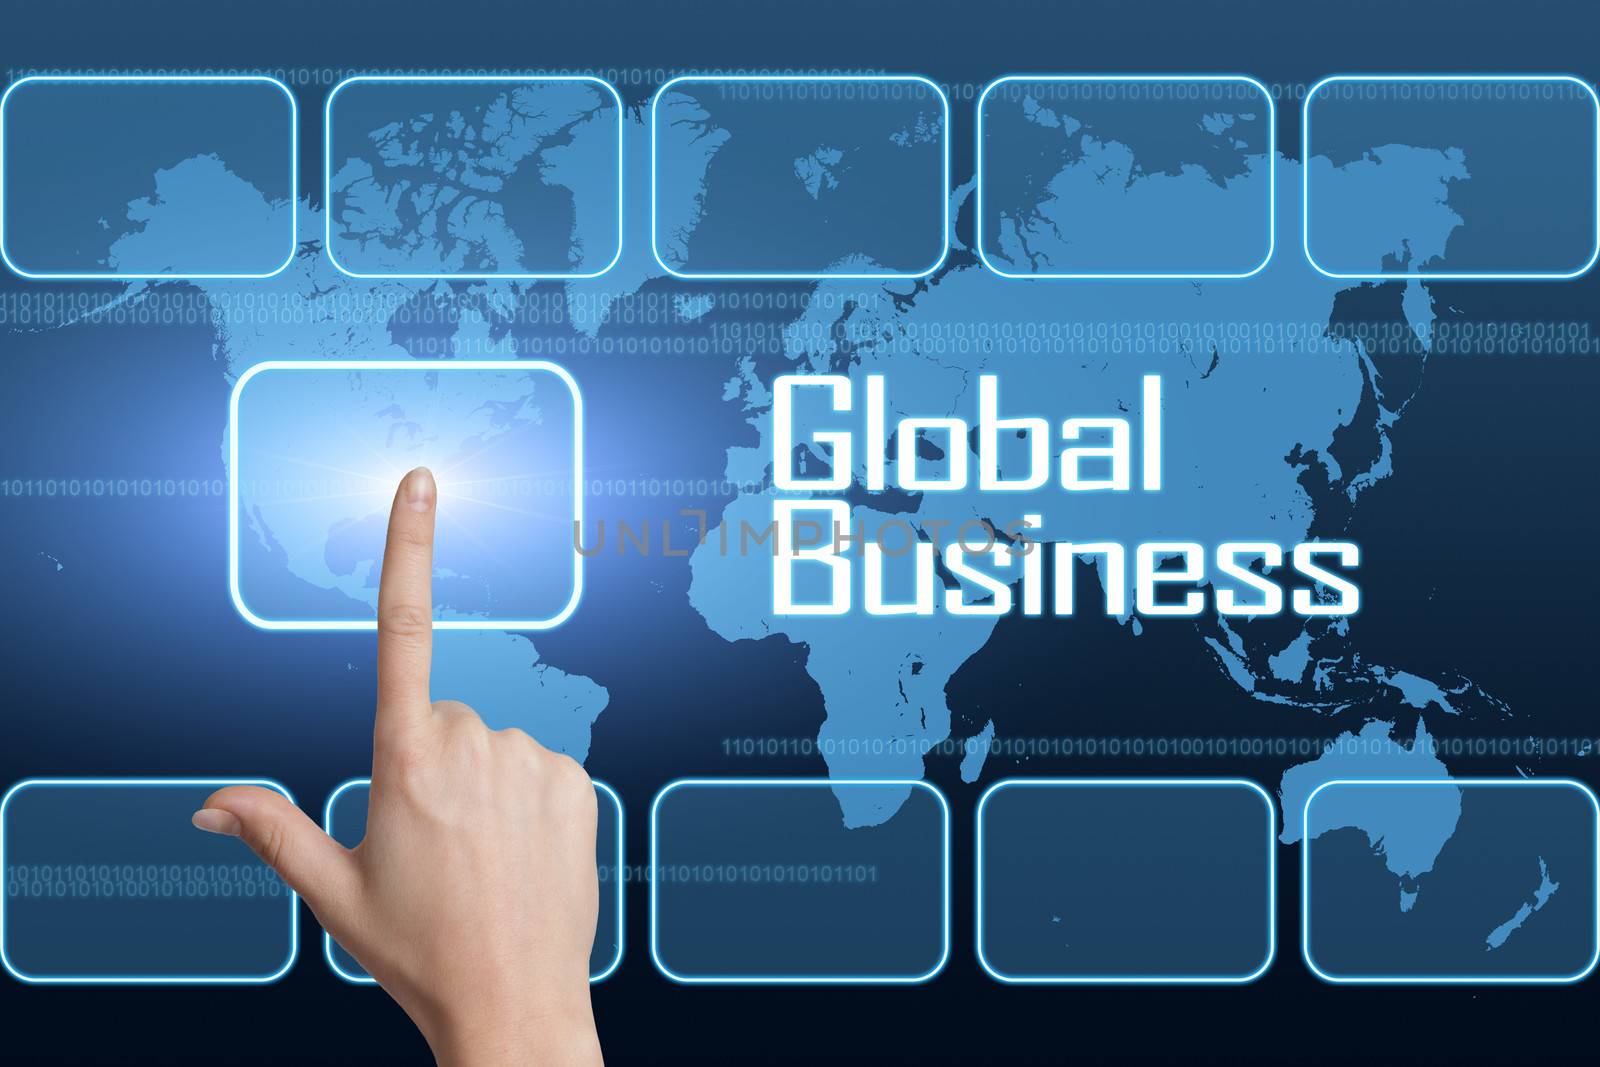 Global Business by Mazirama